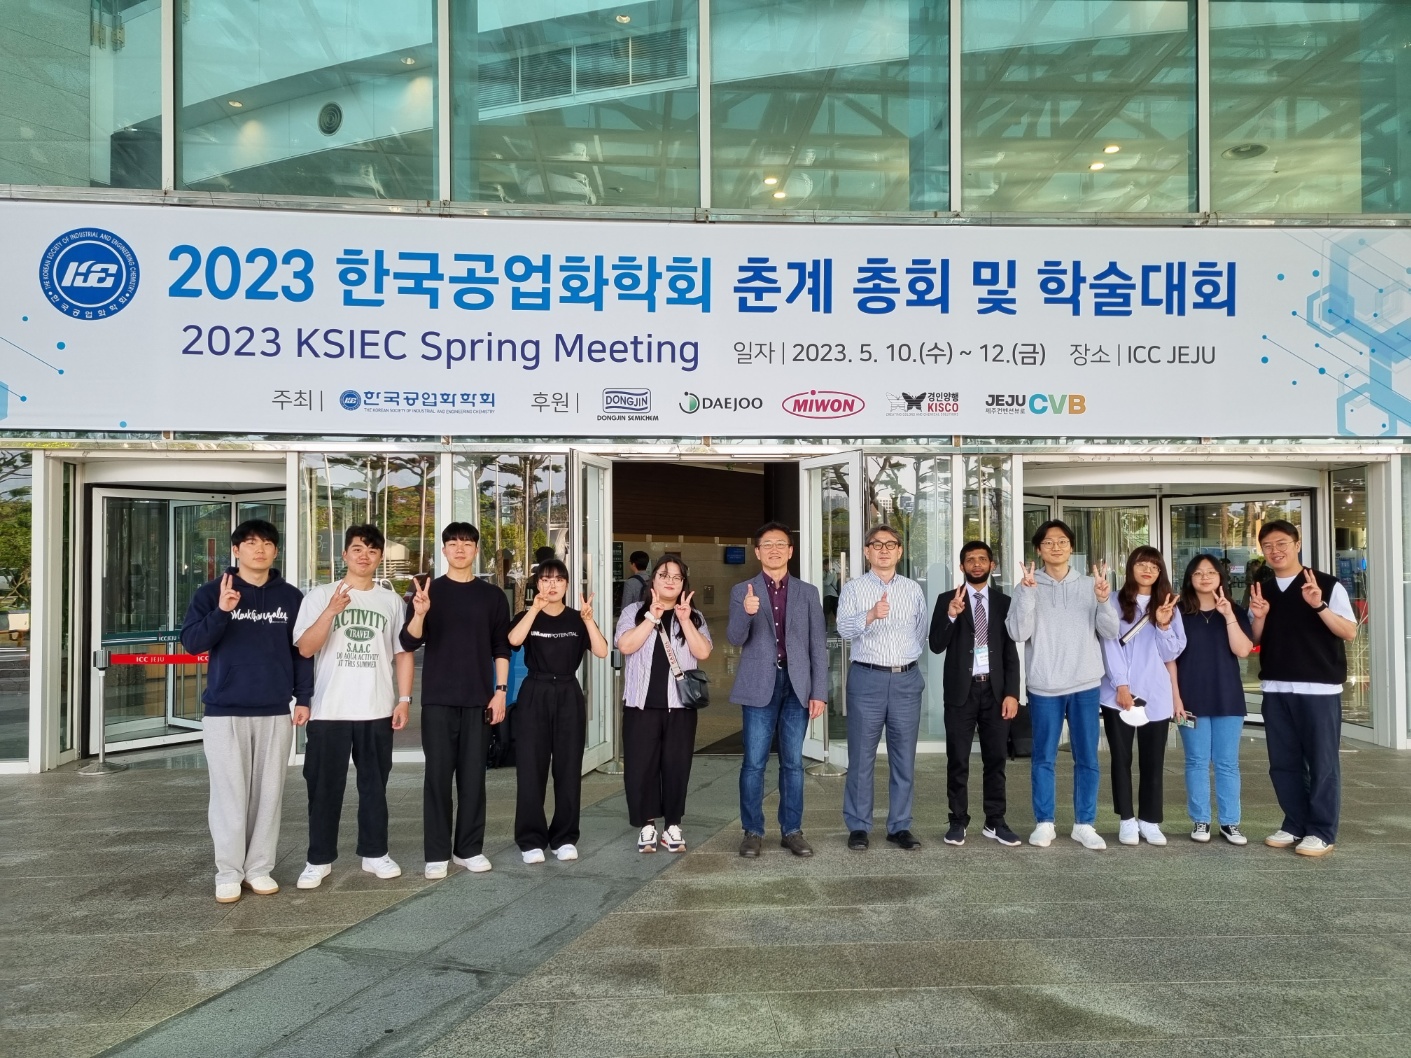 한국공업화학회 논문발표